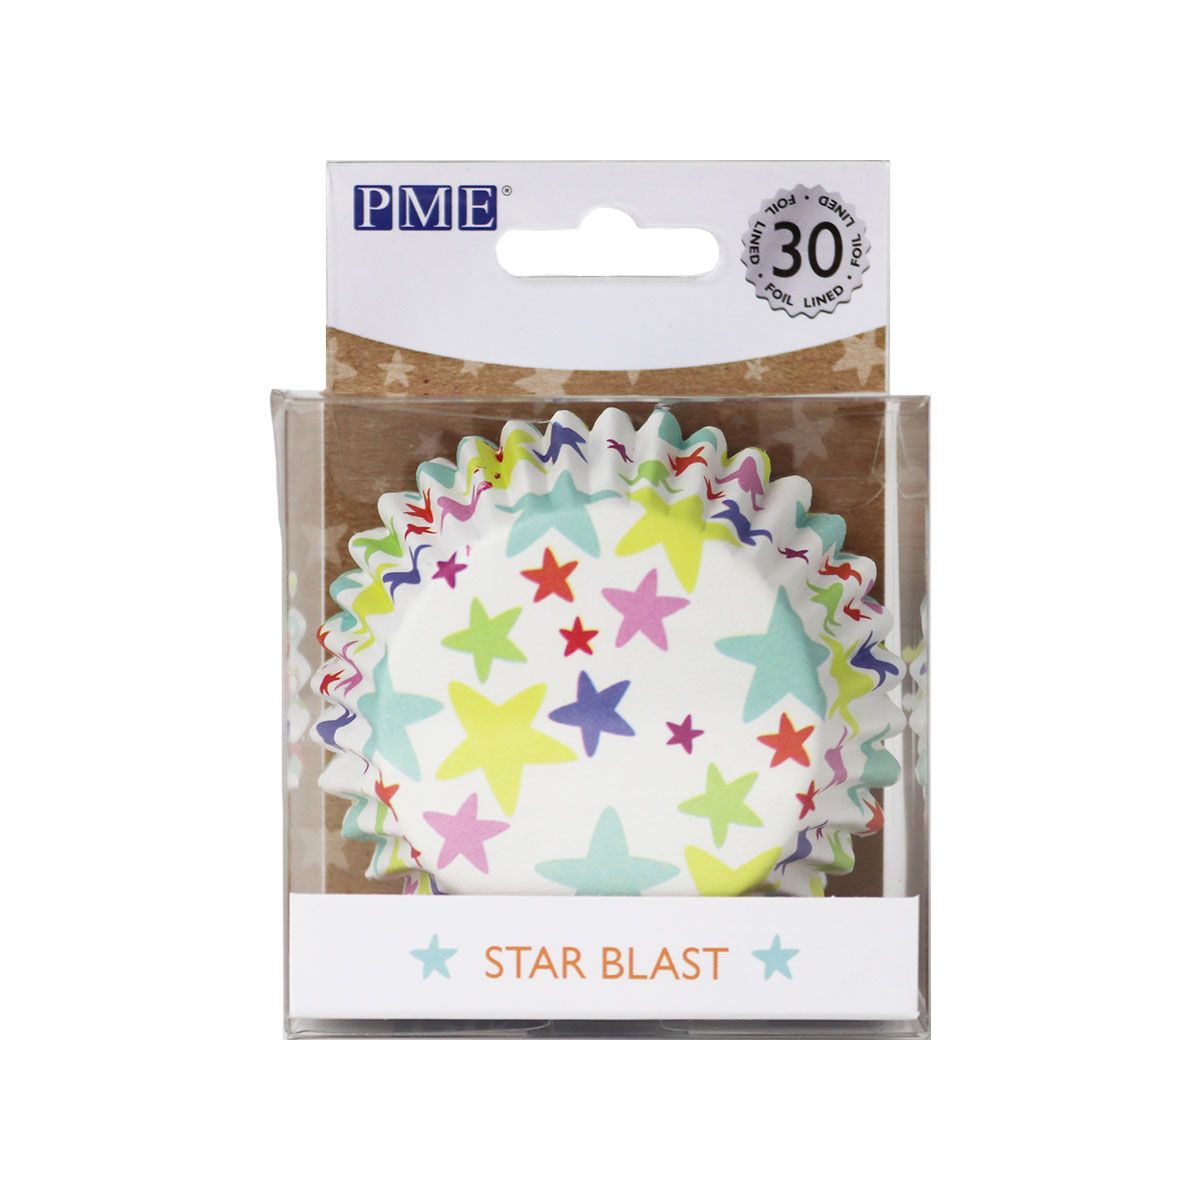 Formas Diversas - Cápsula Para Cupcake PME STAR BLAST PK / 30